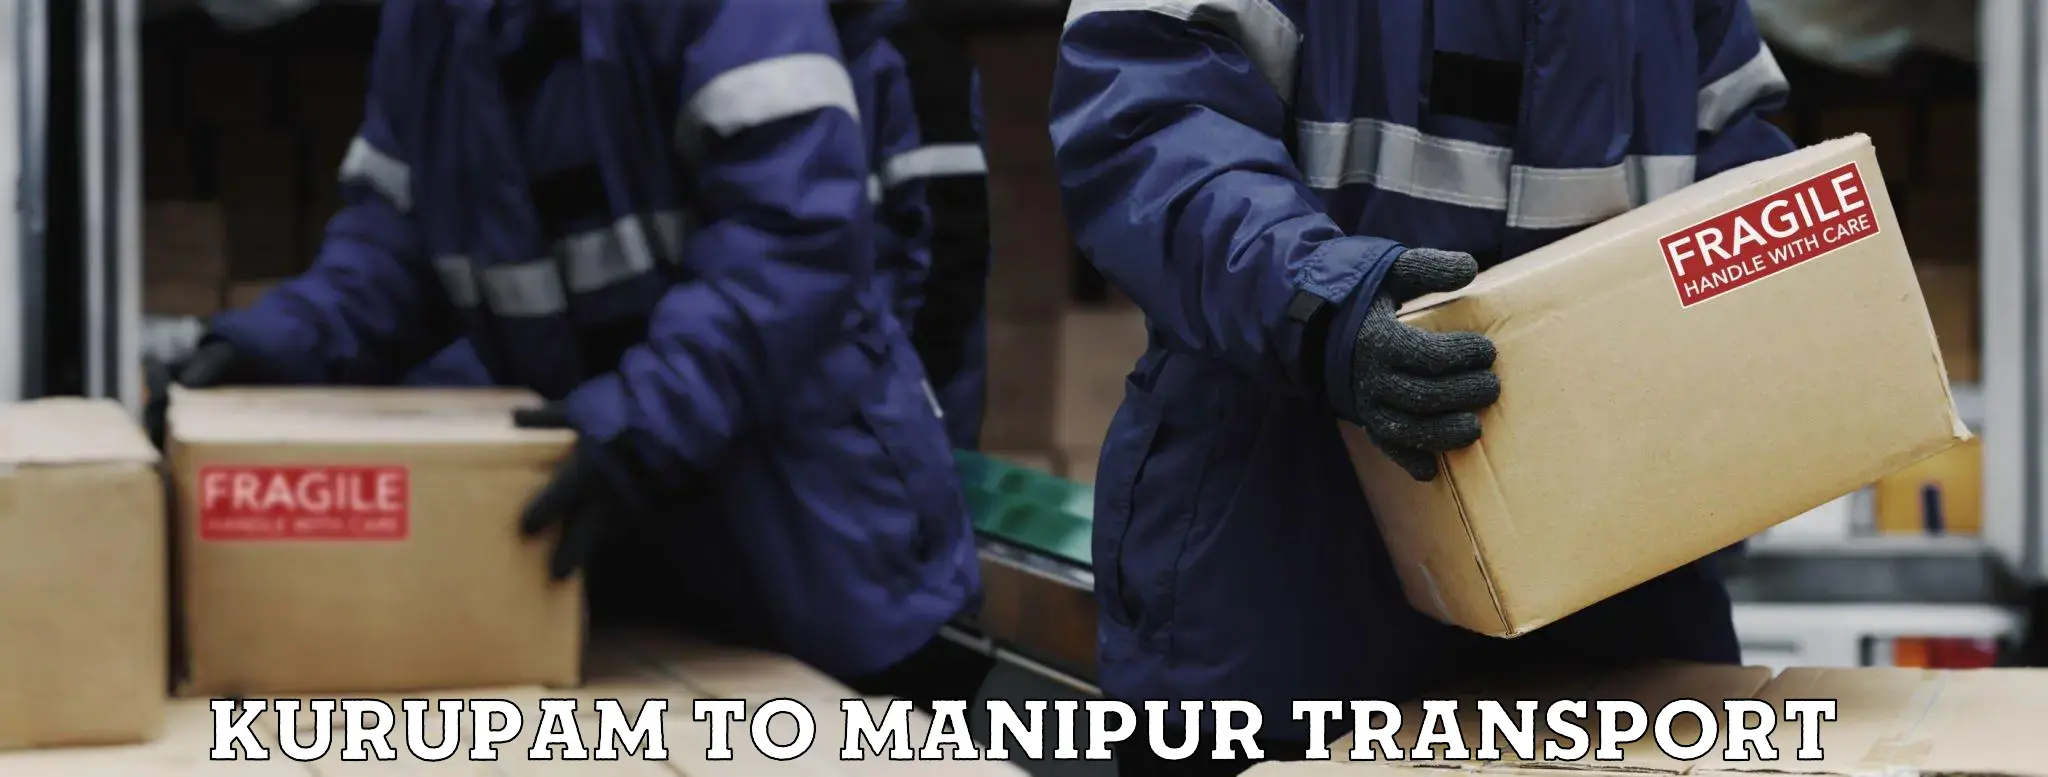 Online transport booking Kurupam to NIT Manipur